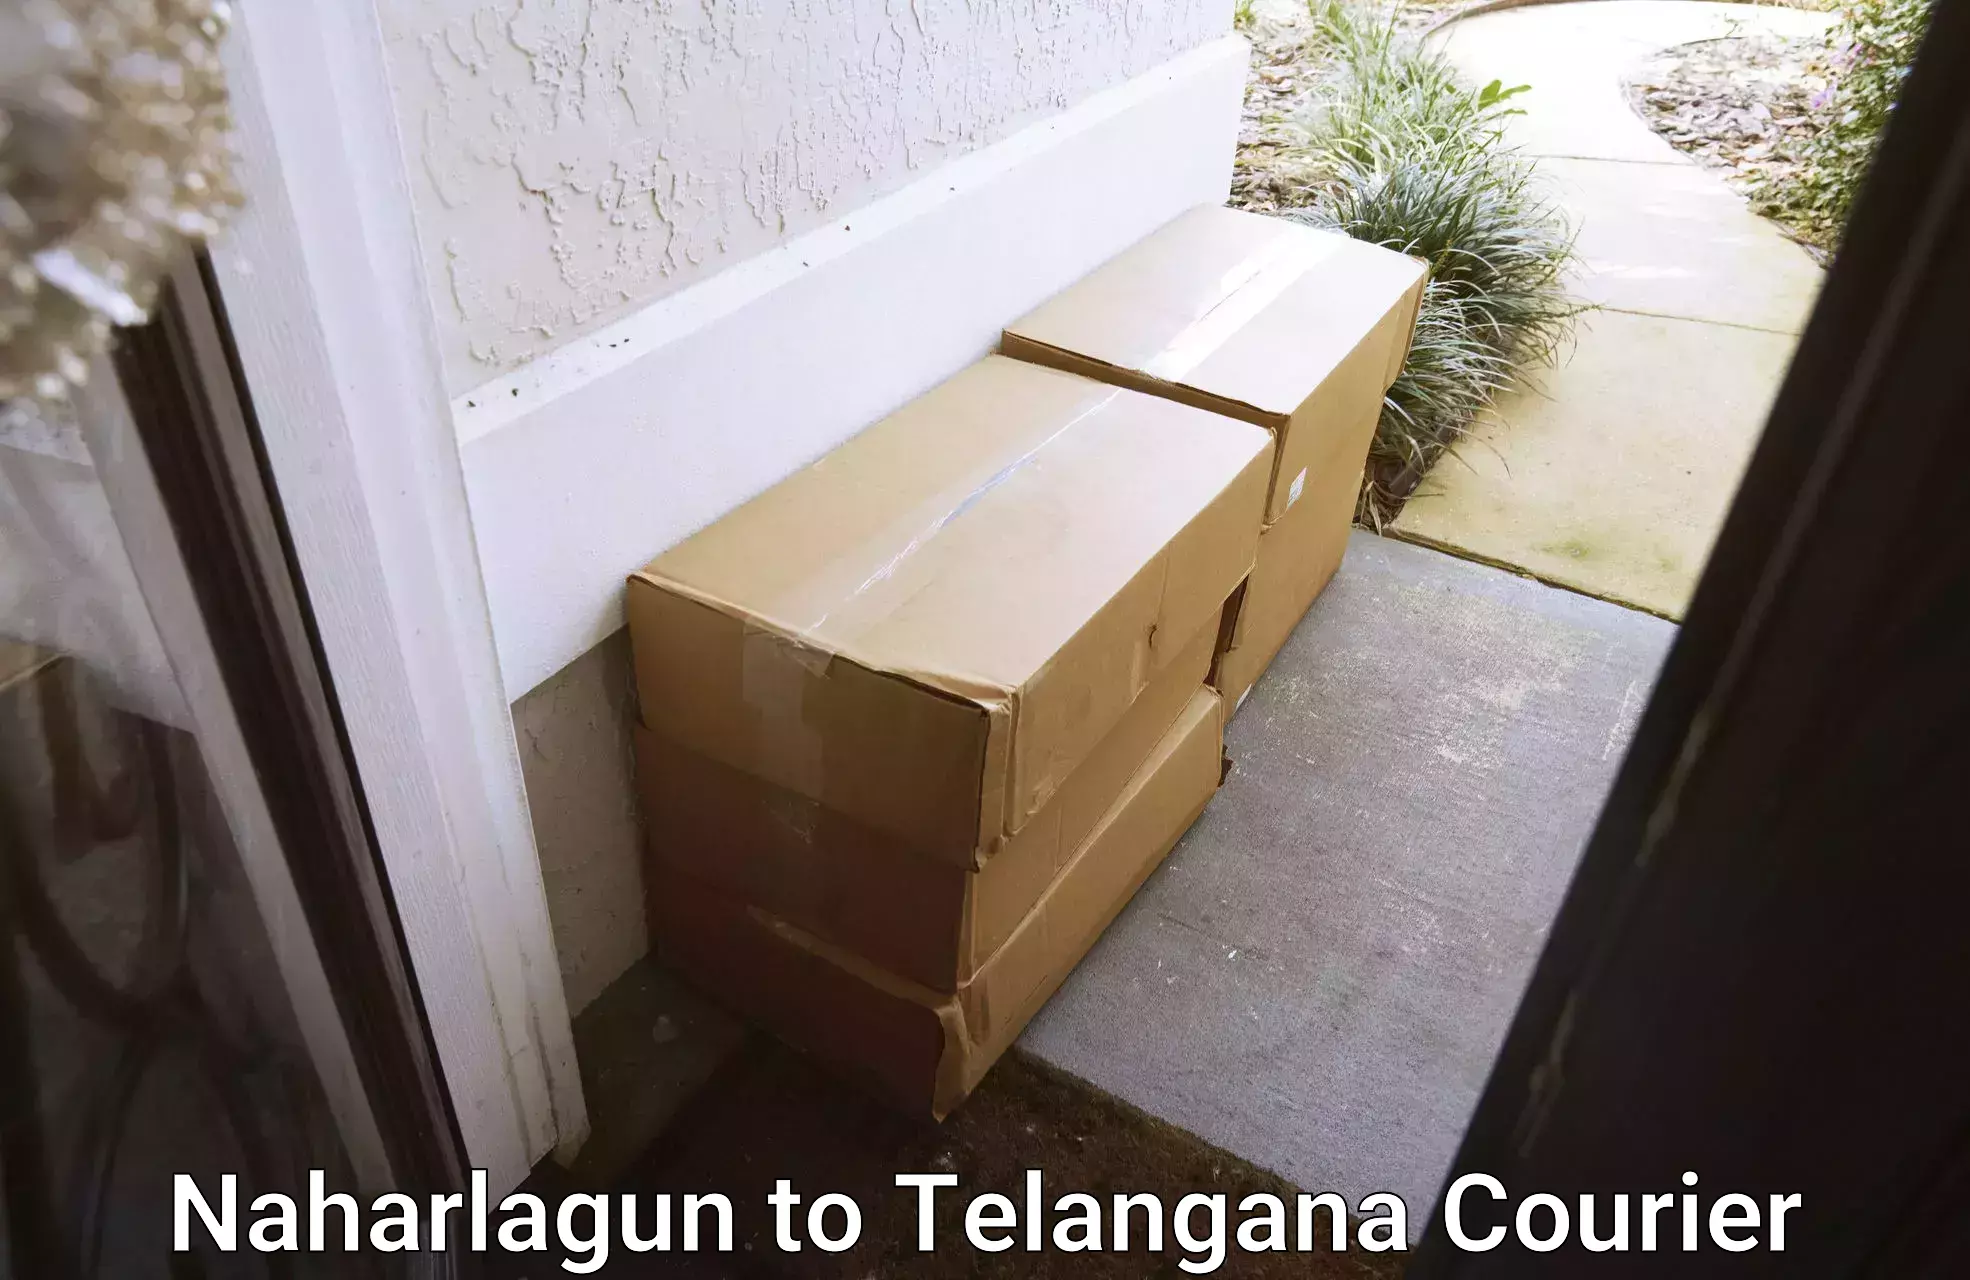 High-performance logistics Naharlagun to Telangana